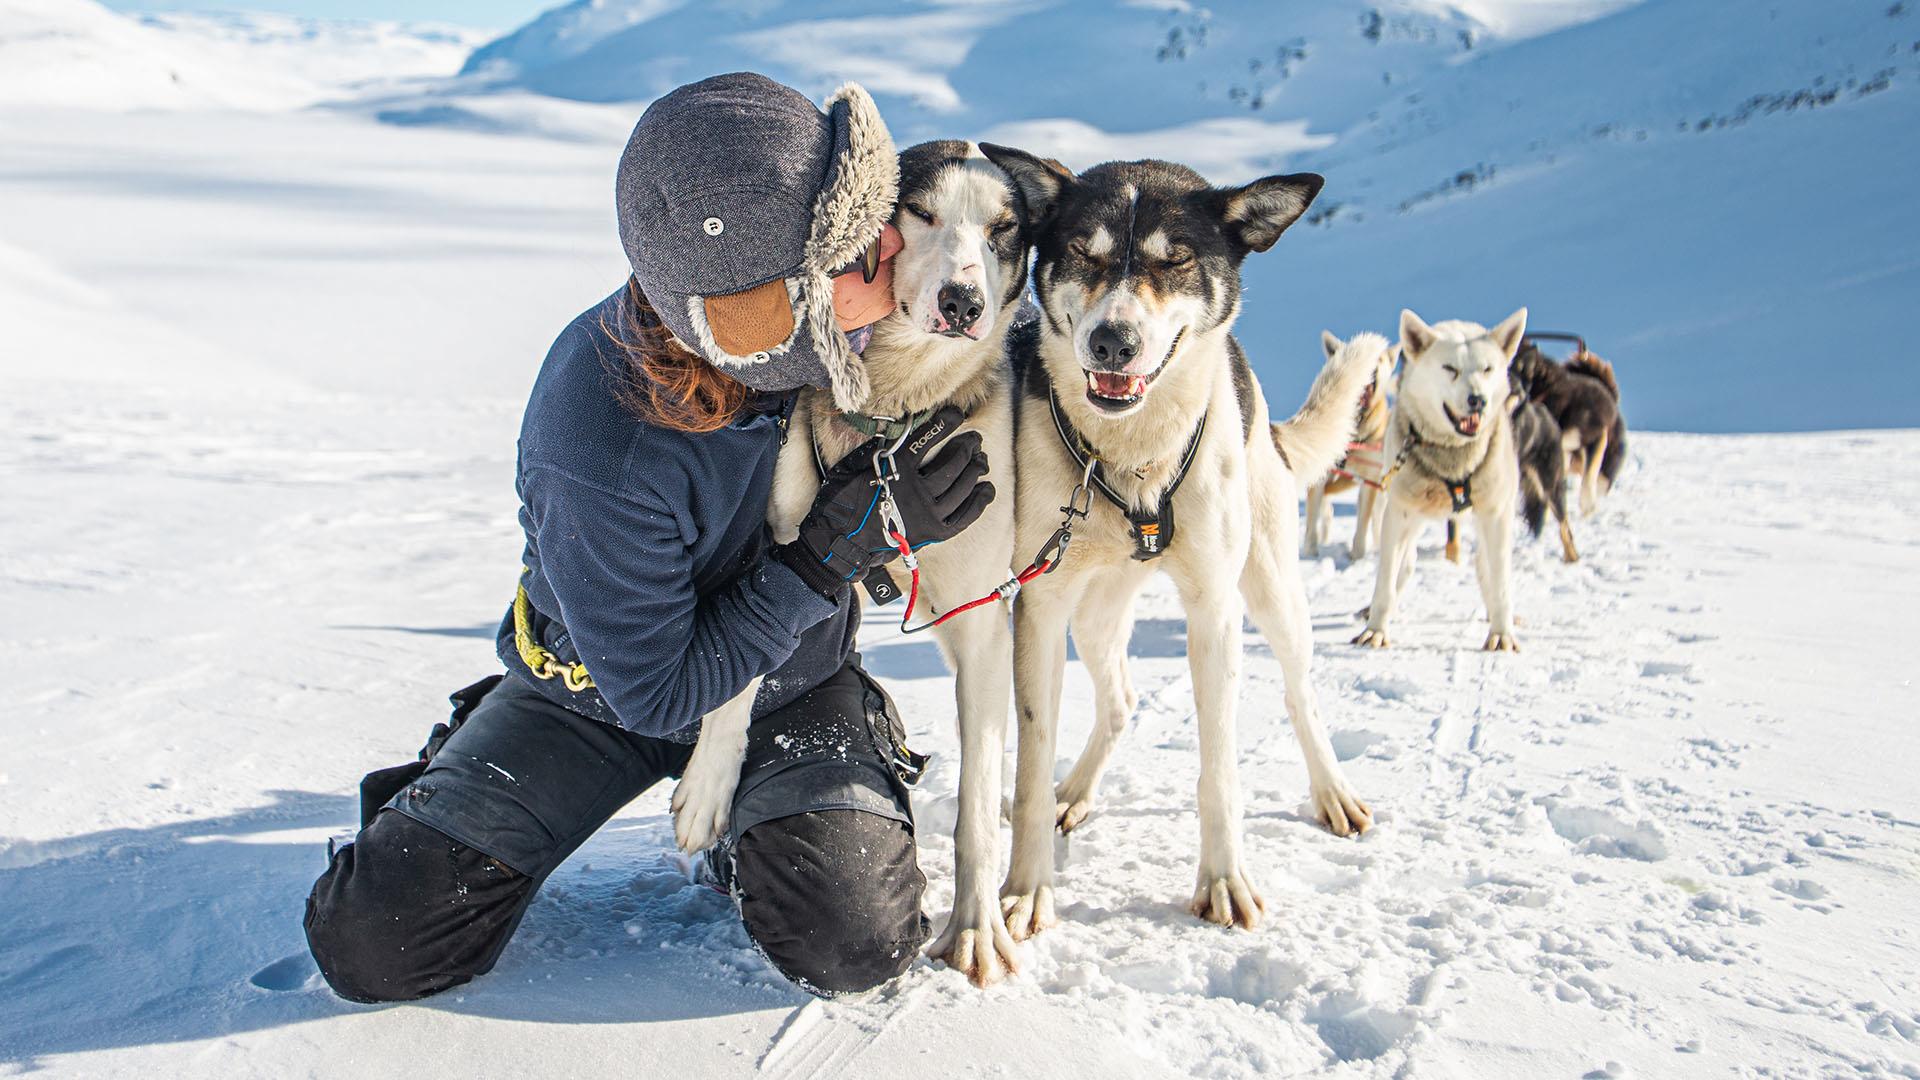 Während einer Pause auf einer Hundeschlittentour im Gebirge kniet der Fahrer neben den beiden Führerhunden und liebkost sie.